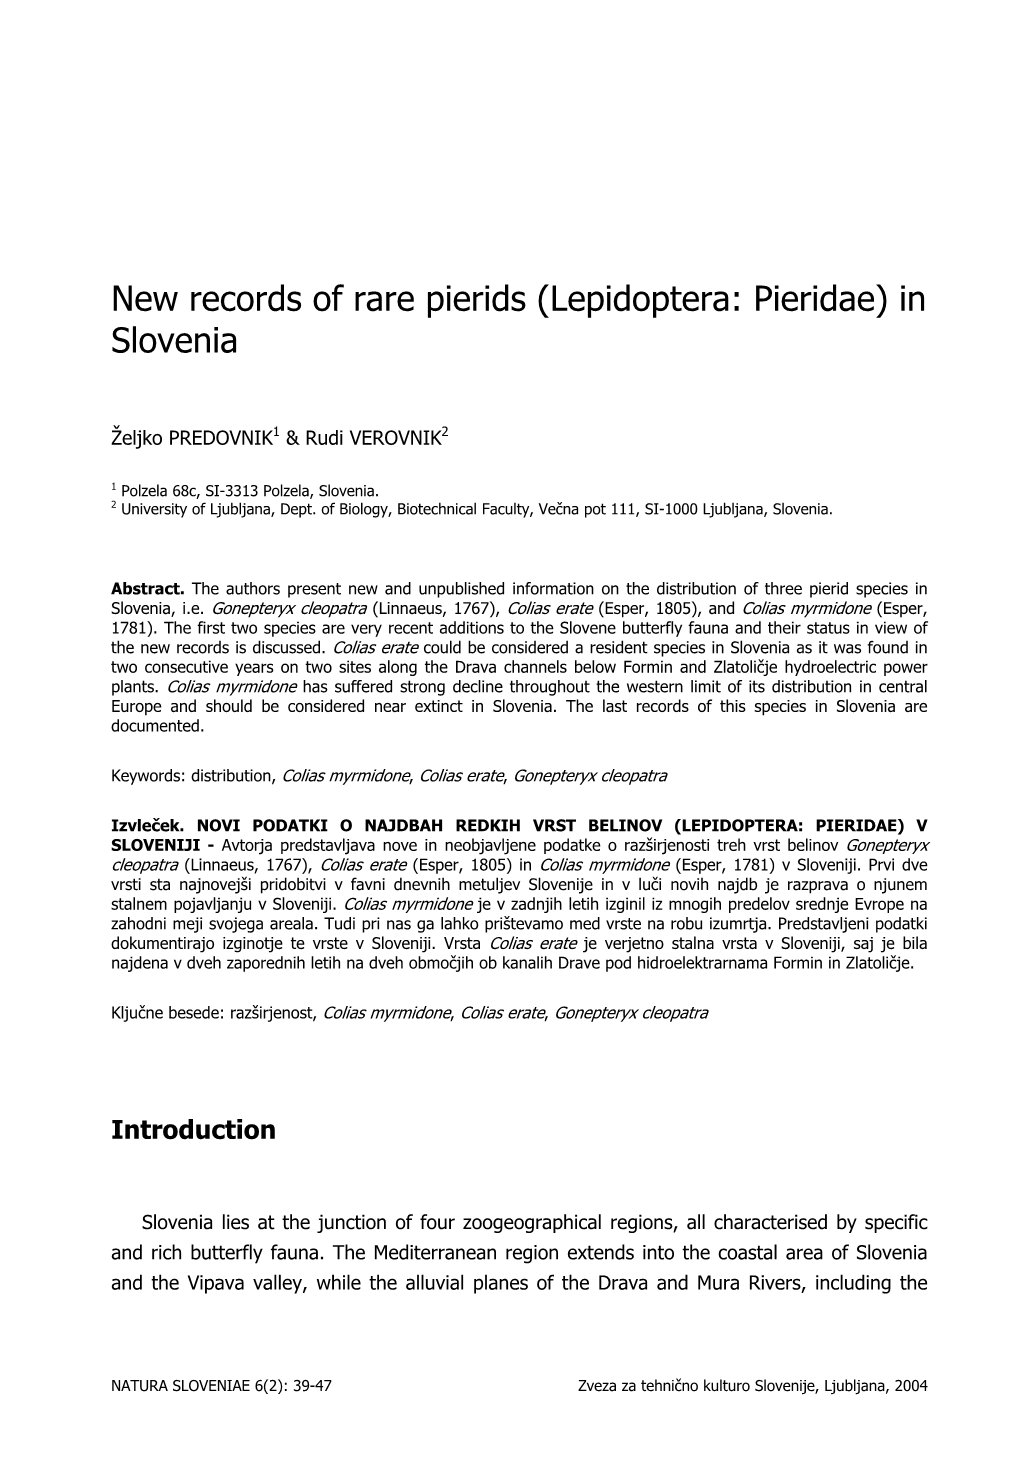 New Records of Rare Pierids (Lepidoptera: Pieridae) in Slovenia